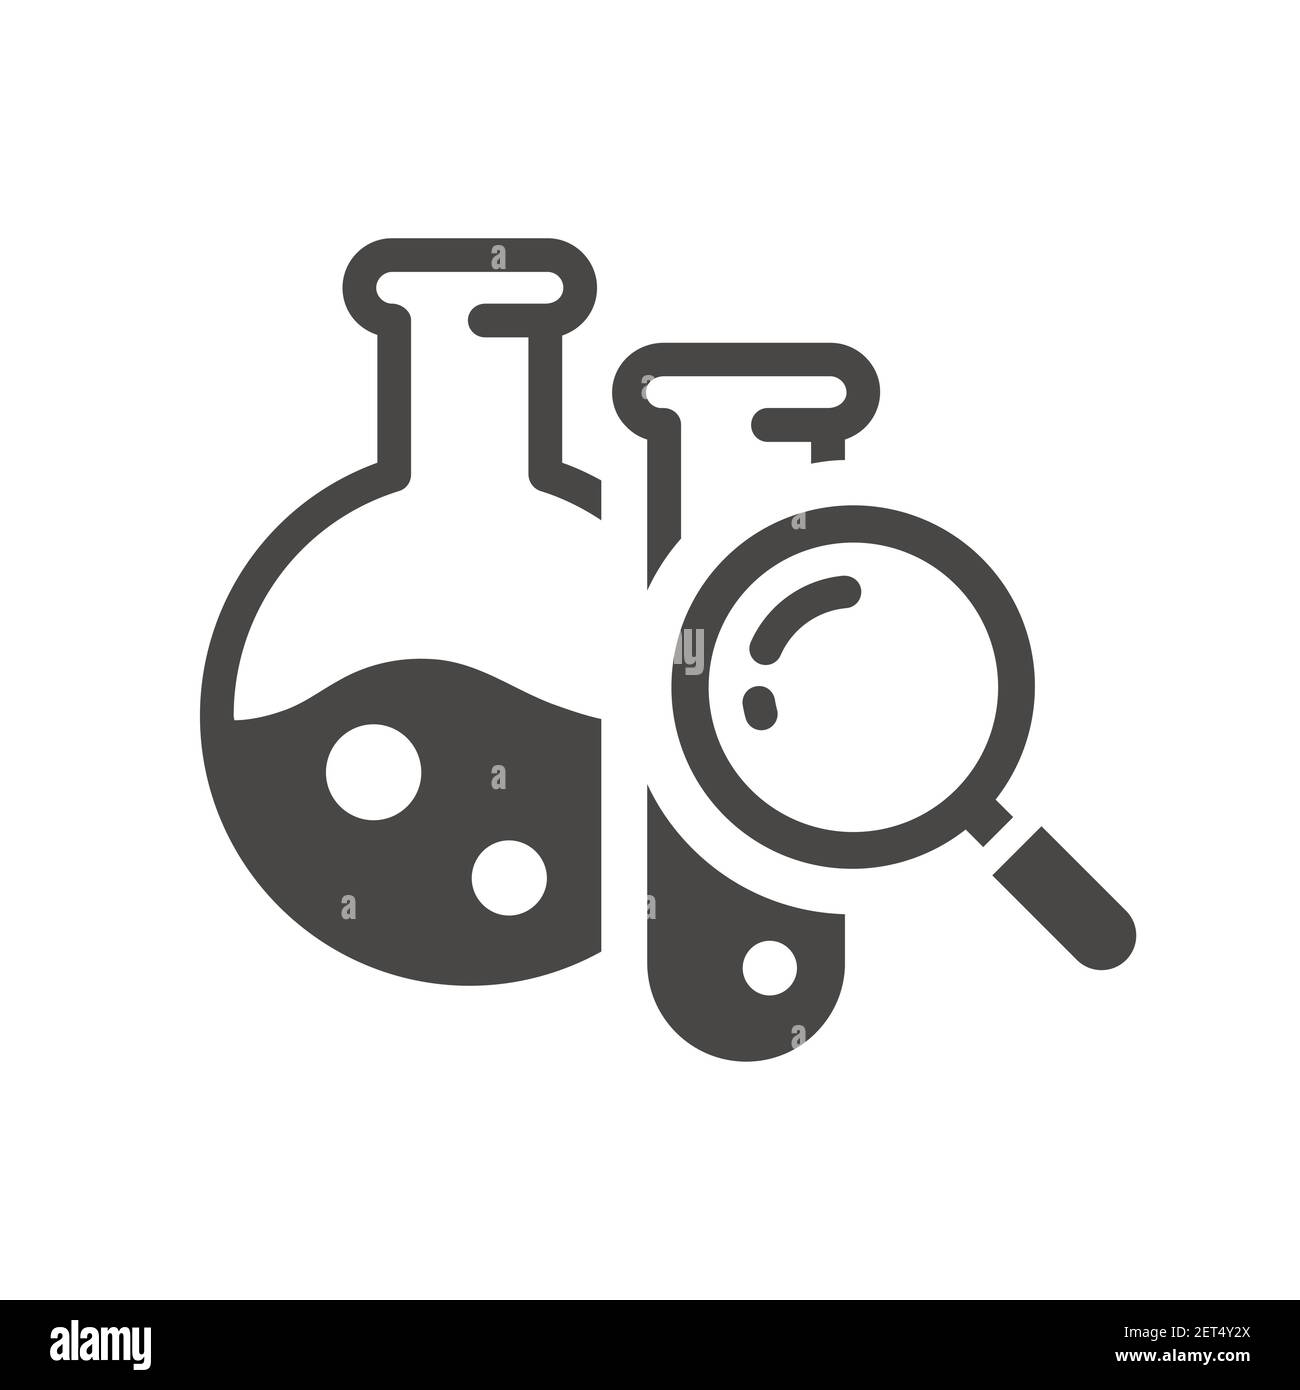 Reagenzgläser mit Lupensymbol für chemische Tests. Laborflasche, Rohr und Lupe, Forschung, Wissenschaft Vektor-Symbol. Stock Vektor